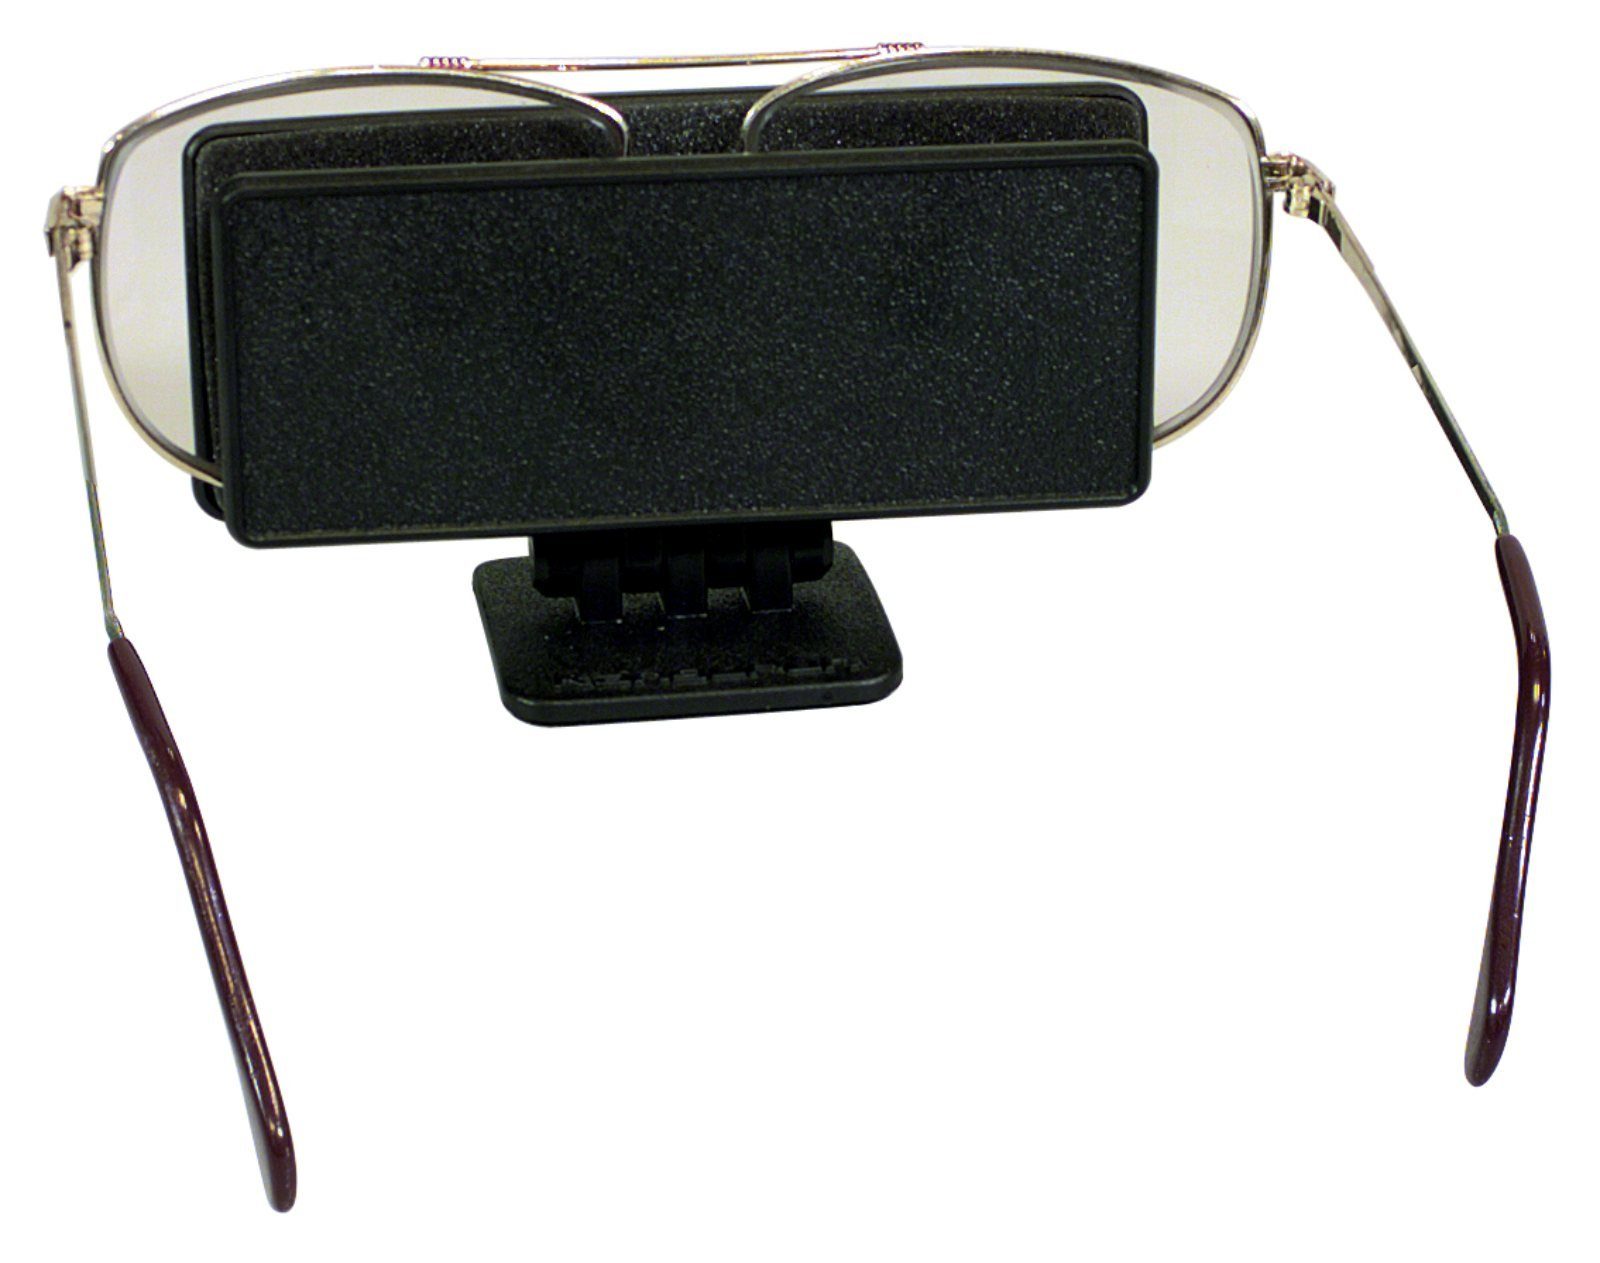 QOHFLD Auto Brillenetui Auto Sonnenbrillen Halter Case Box,für